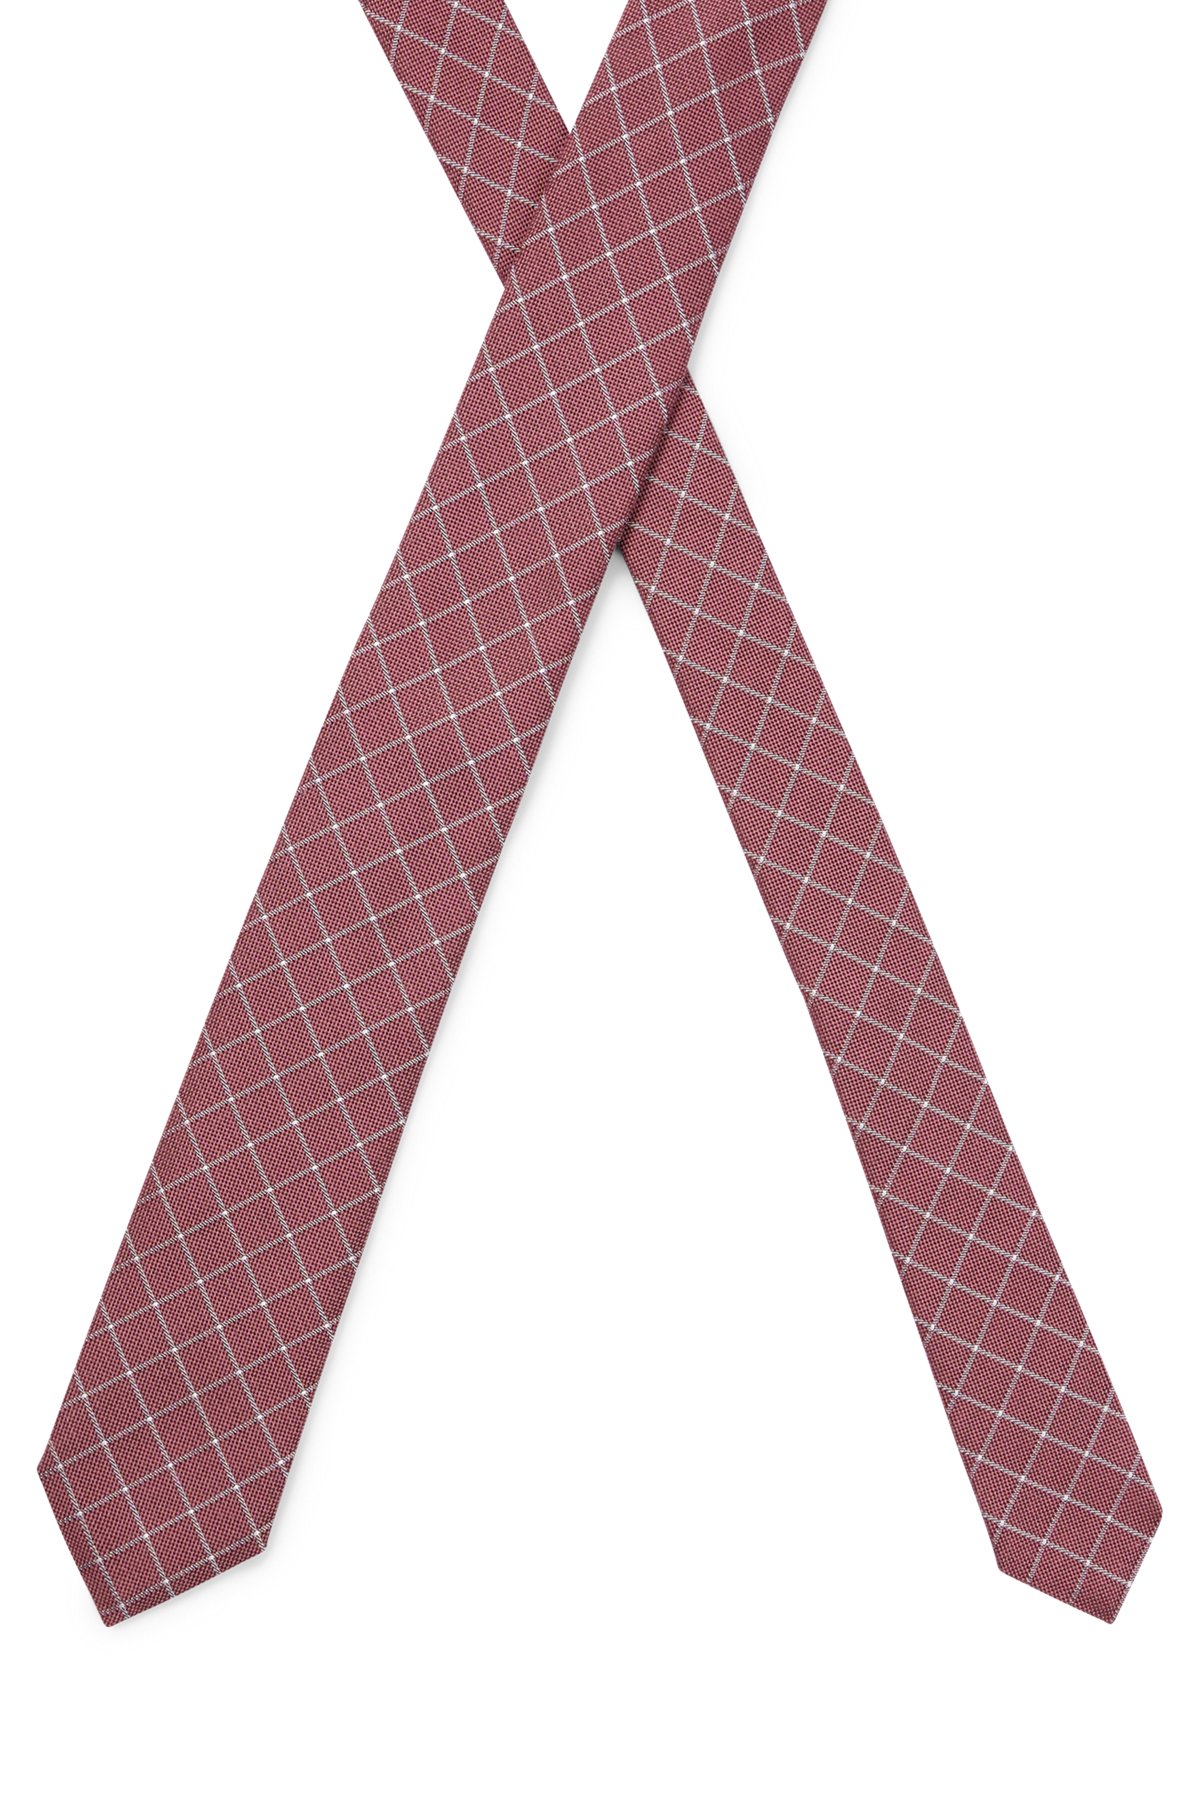 Cravate en jacquard de soie à carreaux, réalisée à la main, Rouge sombre